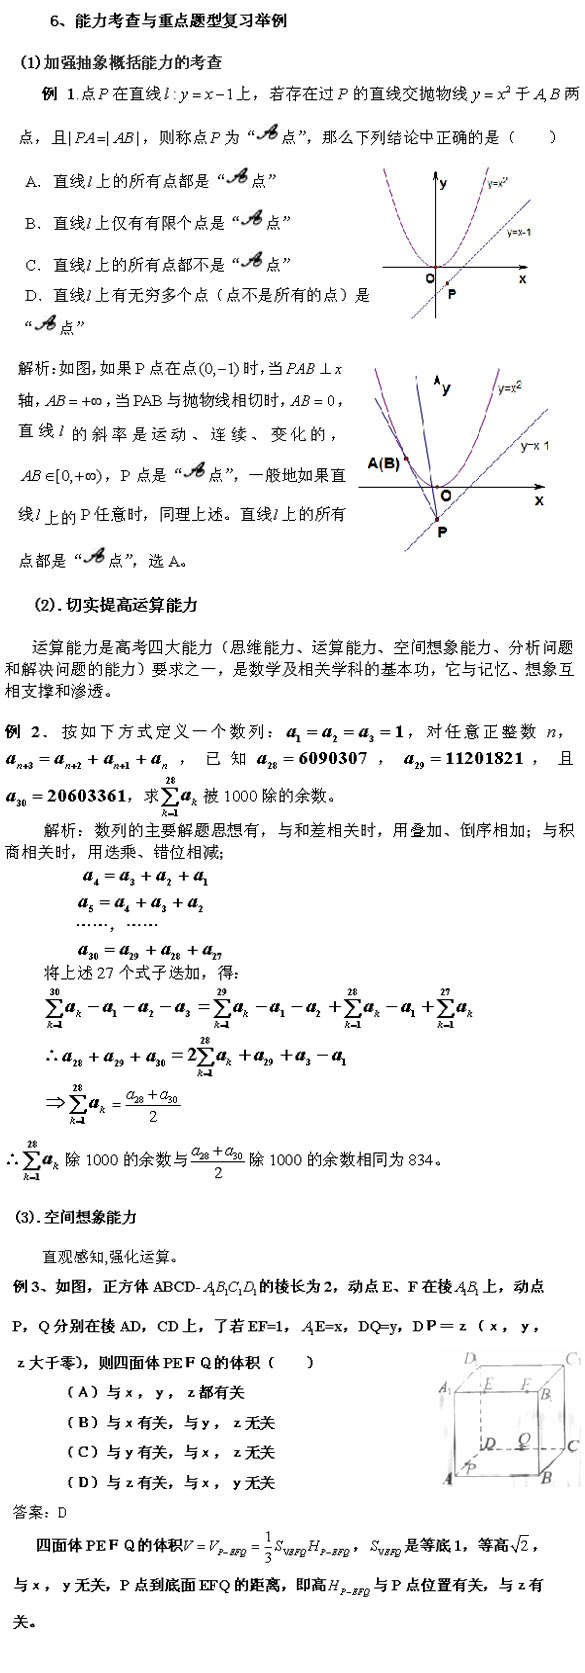 特级教师解读:2011北京高考数学《考试说明》